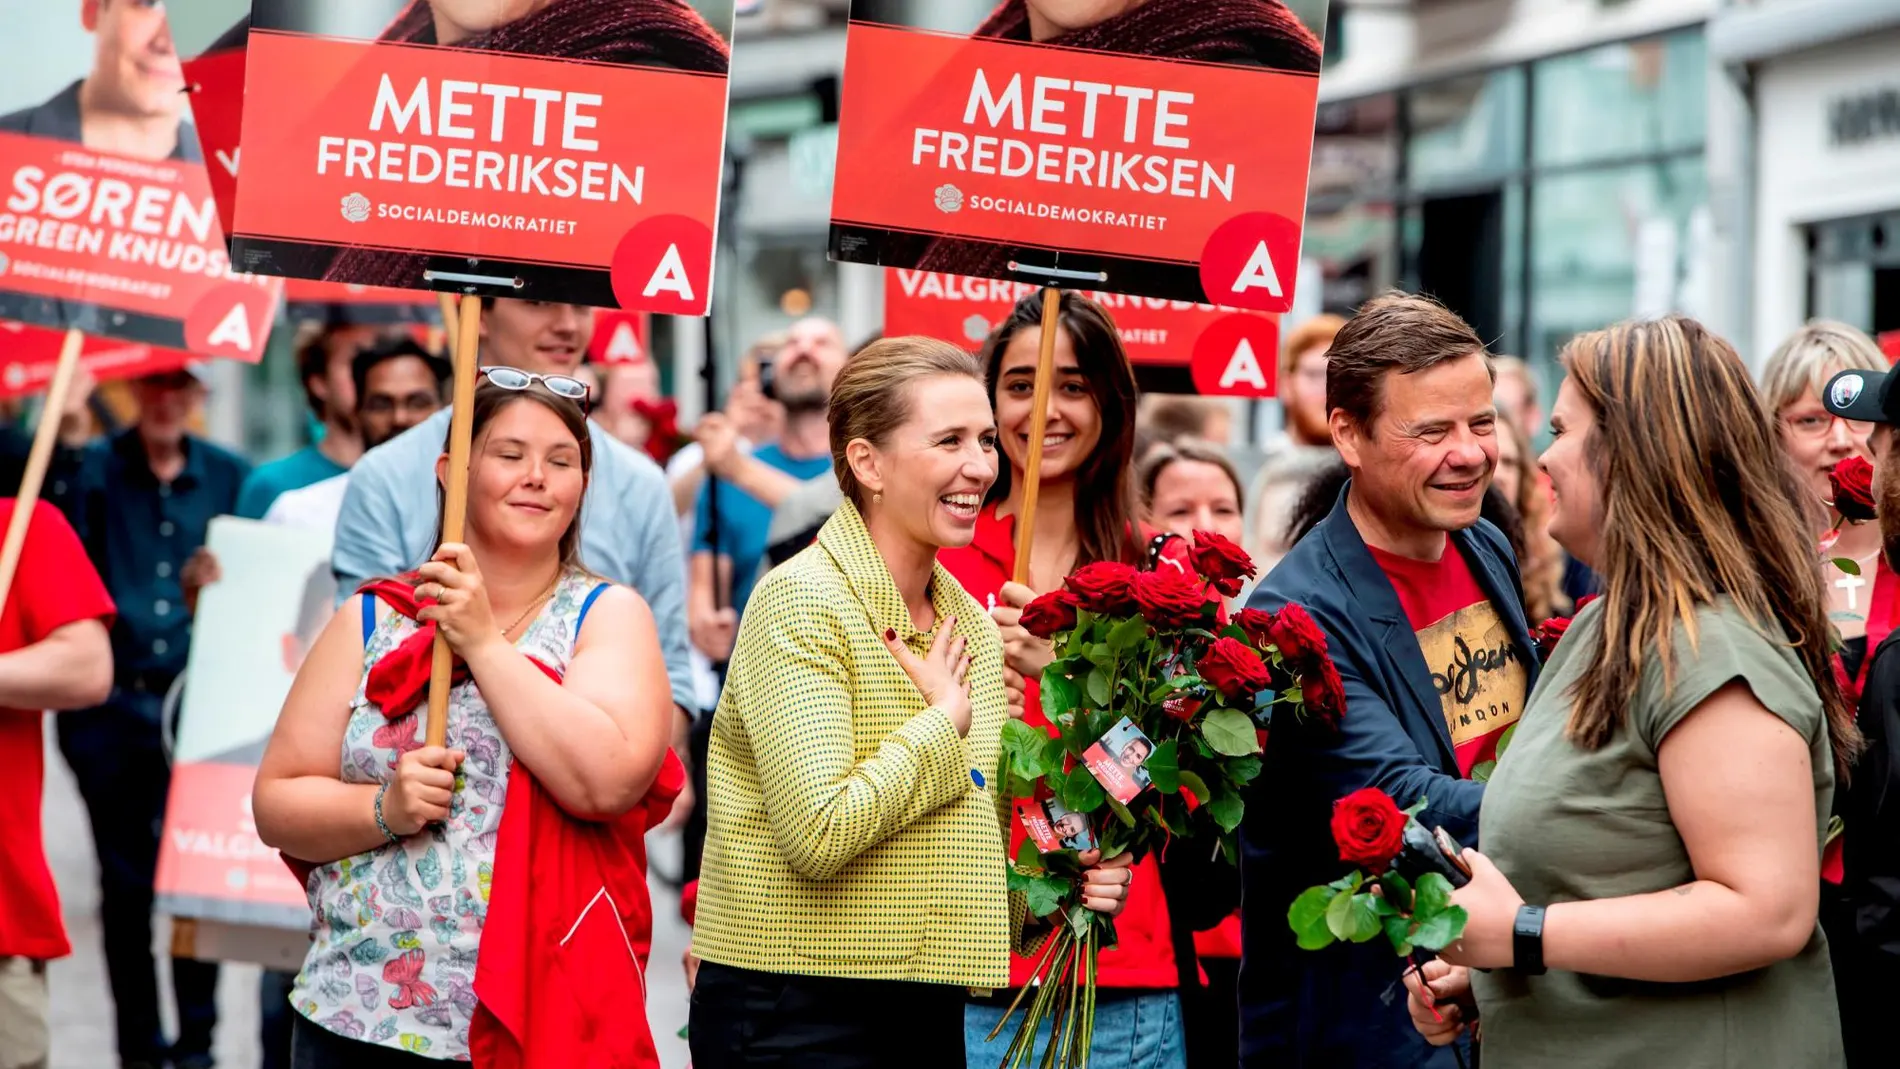 La líder de la oposición y favorita en los sondeos saluda a sus votantes en Aalborg, Dinamarca/ Reuters